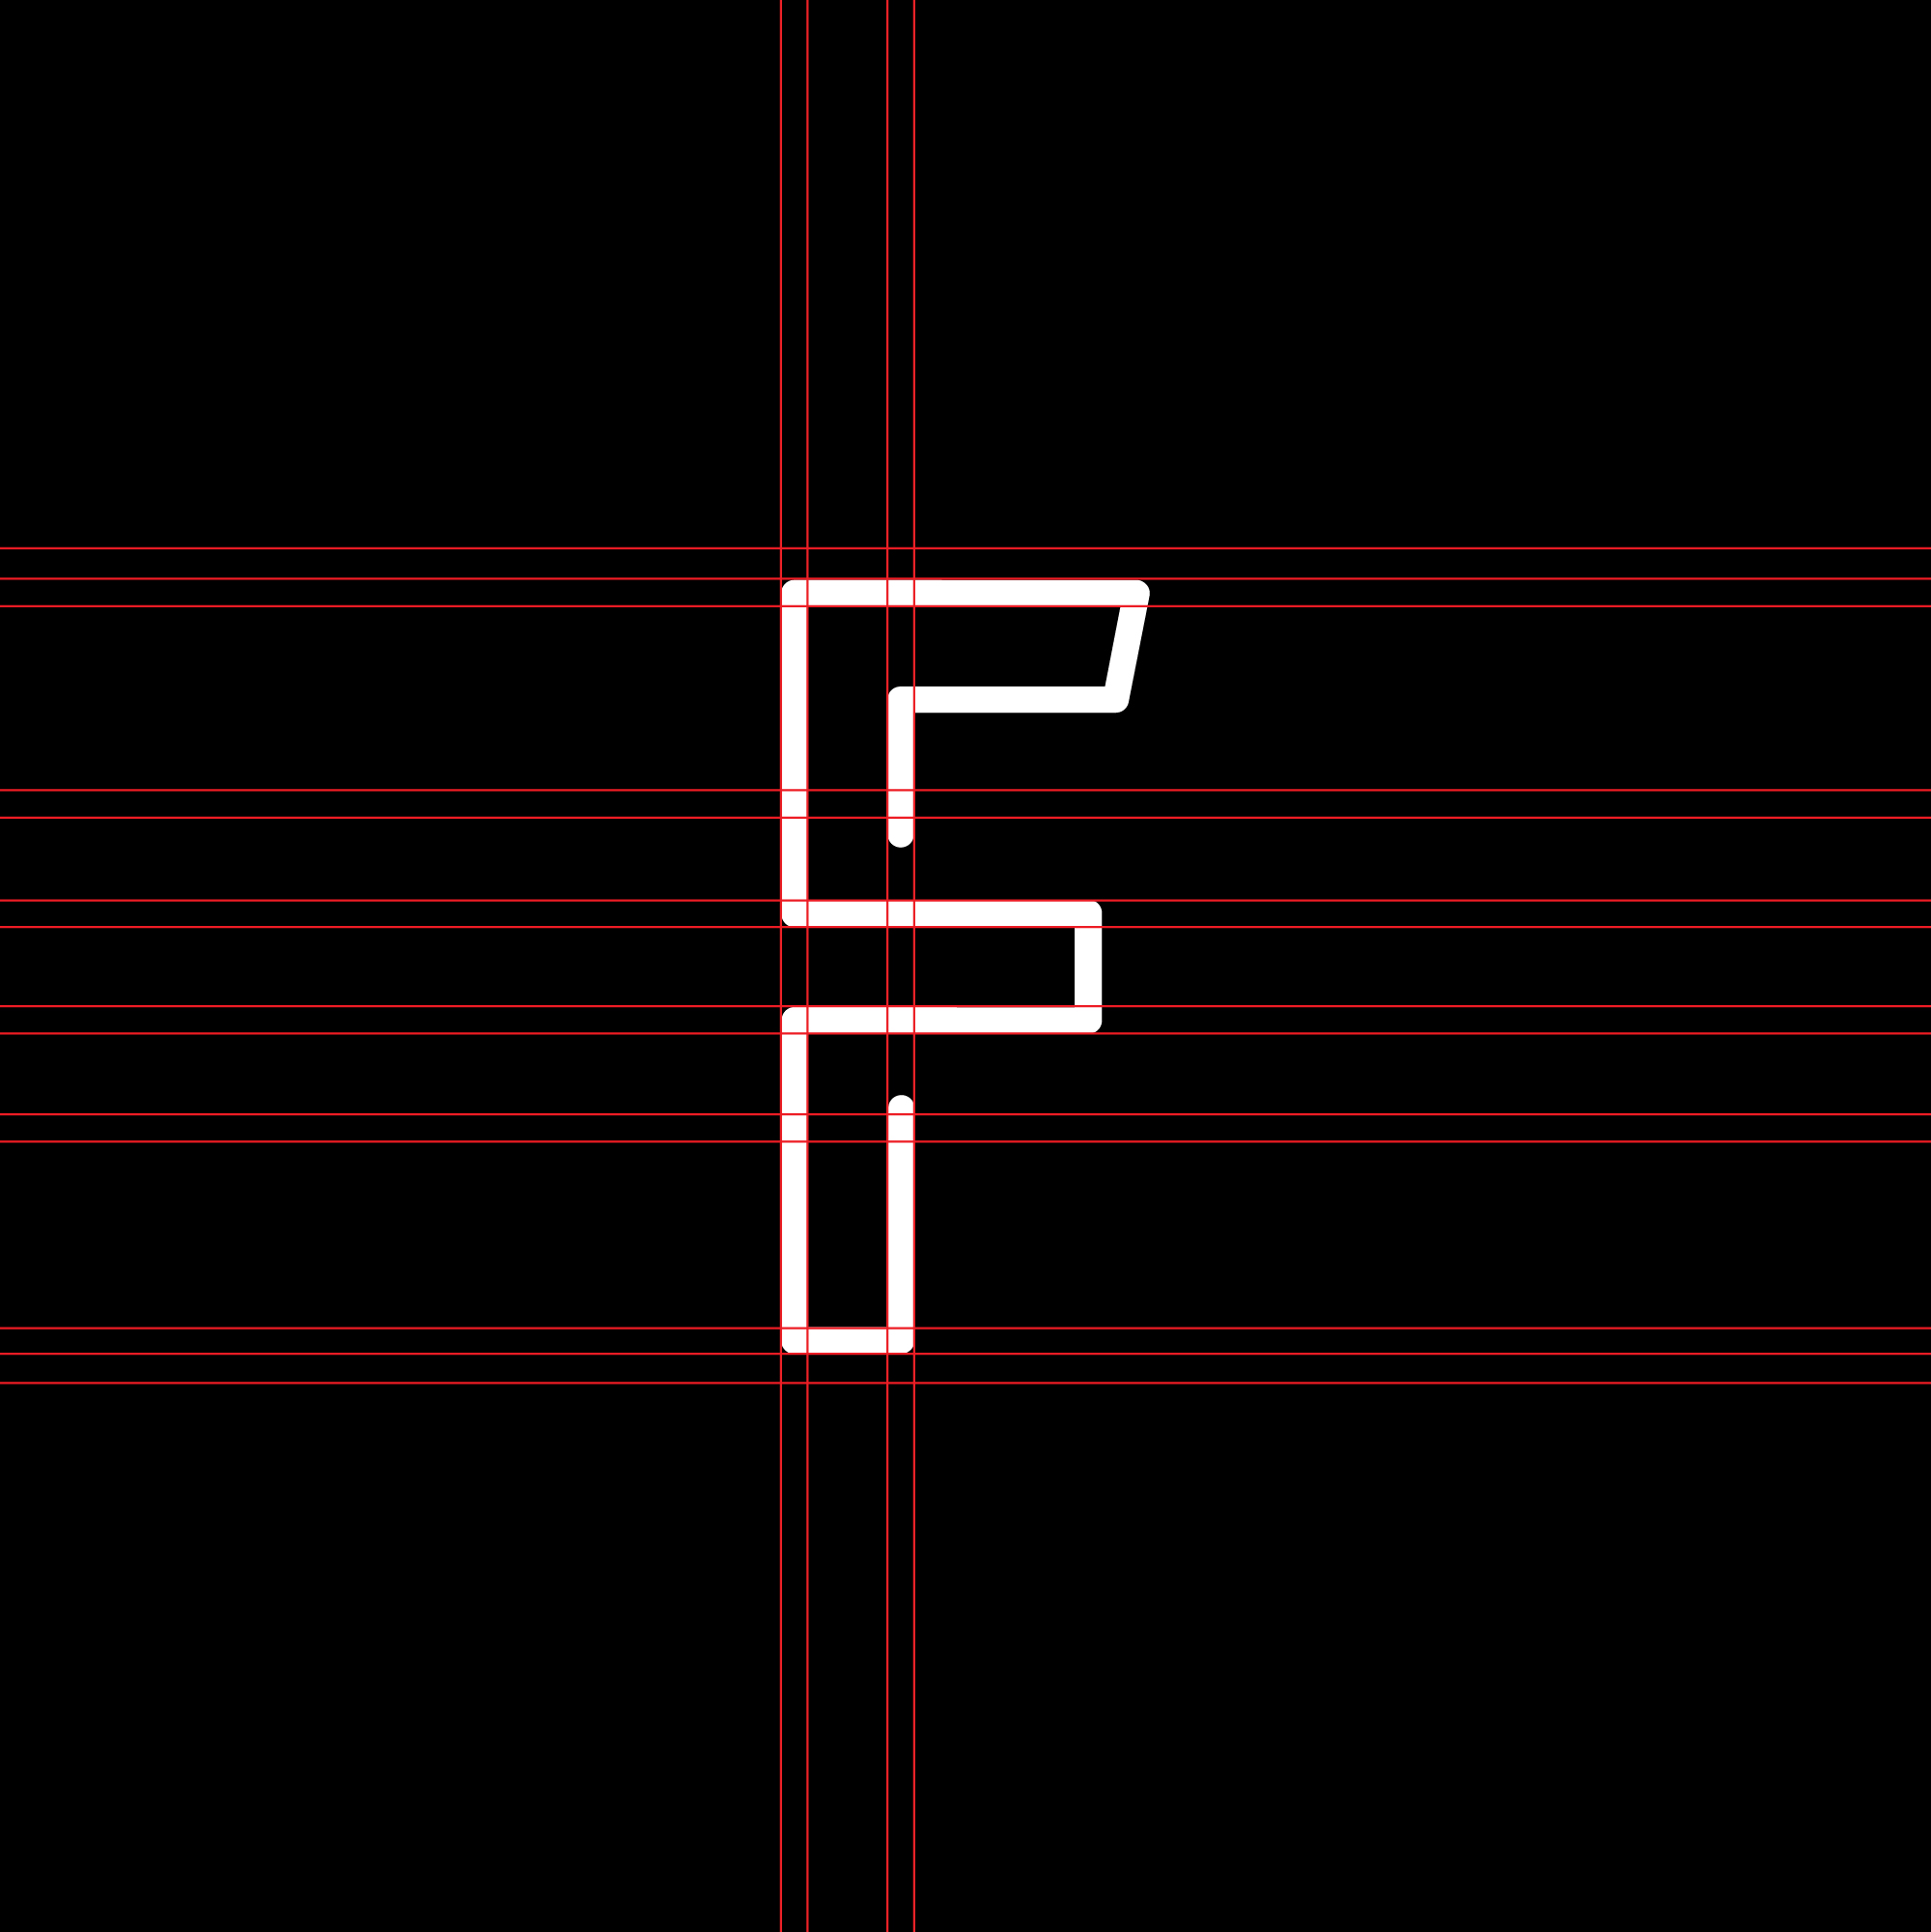 logo-design- black-white-minimalist-letter-neon-light